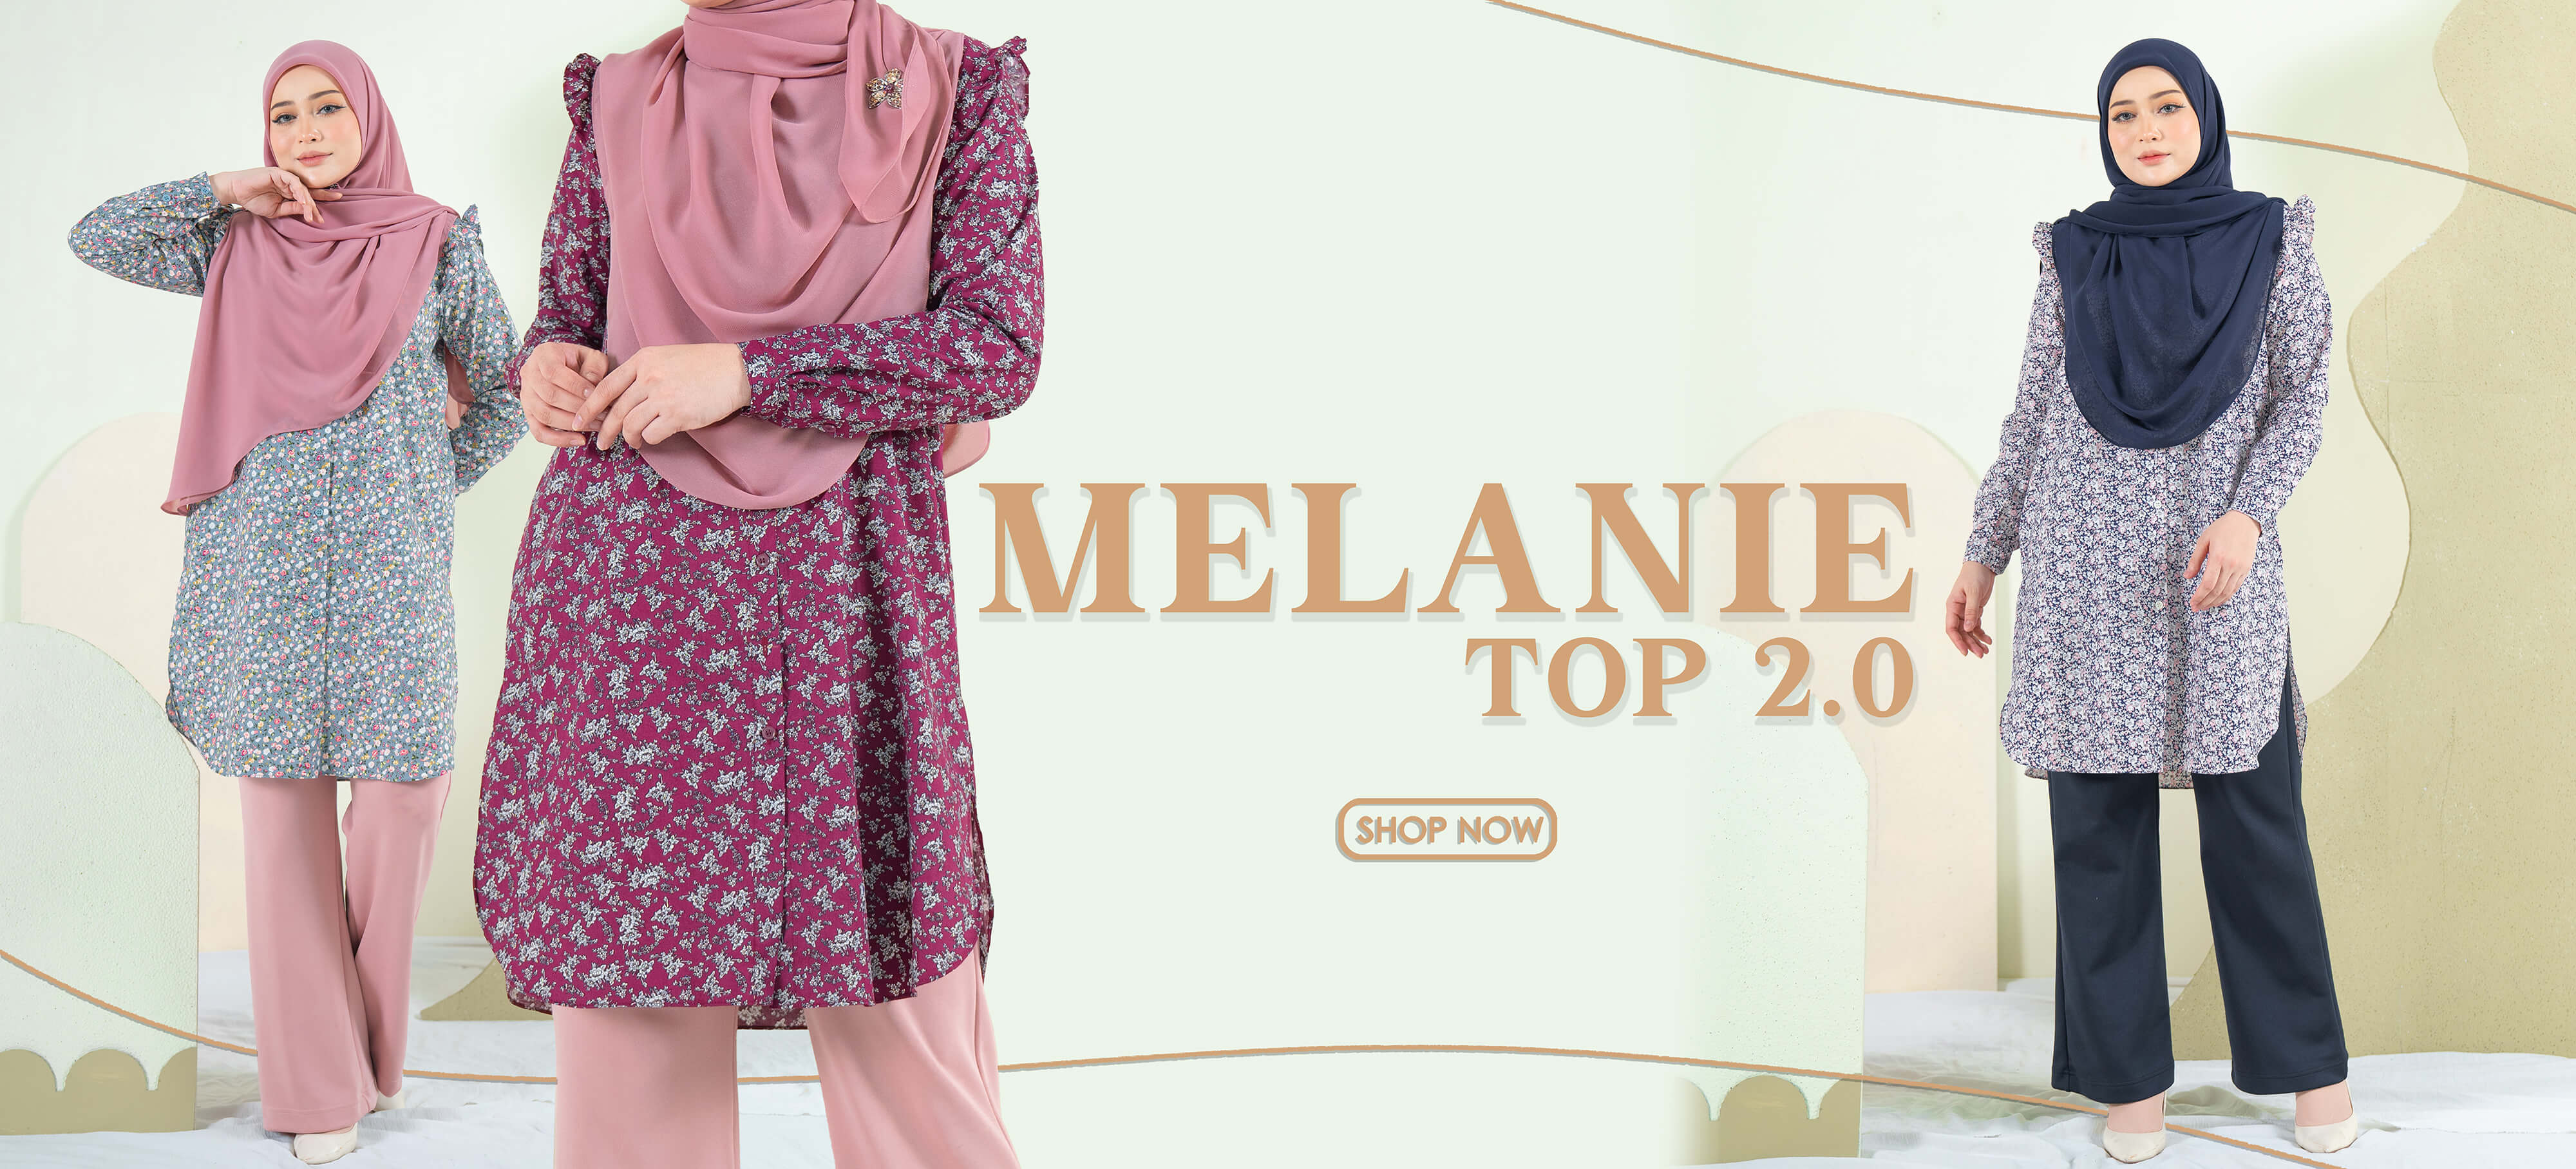 Melanie Top 2.0